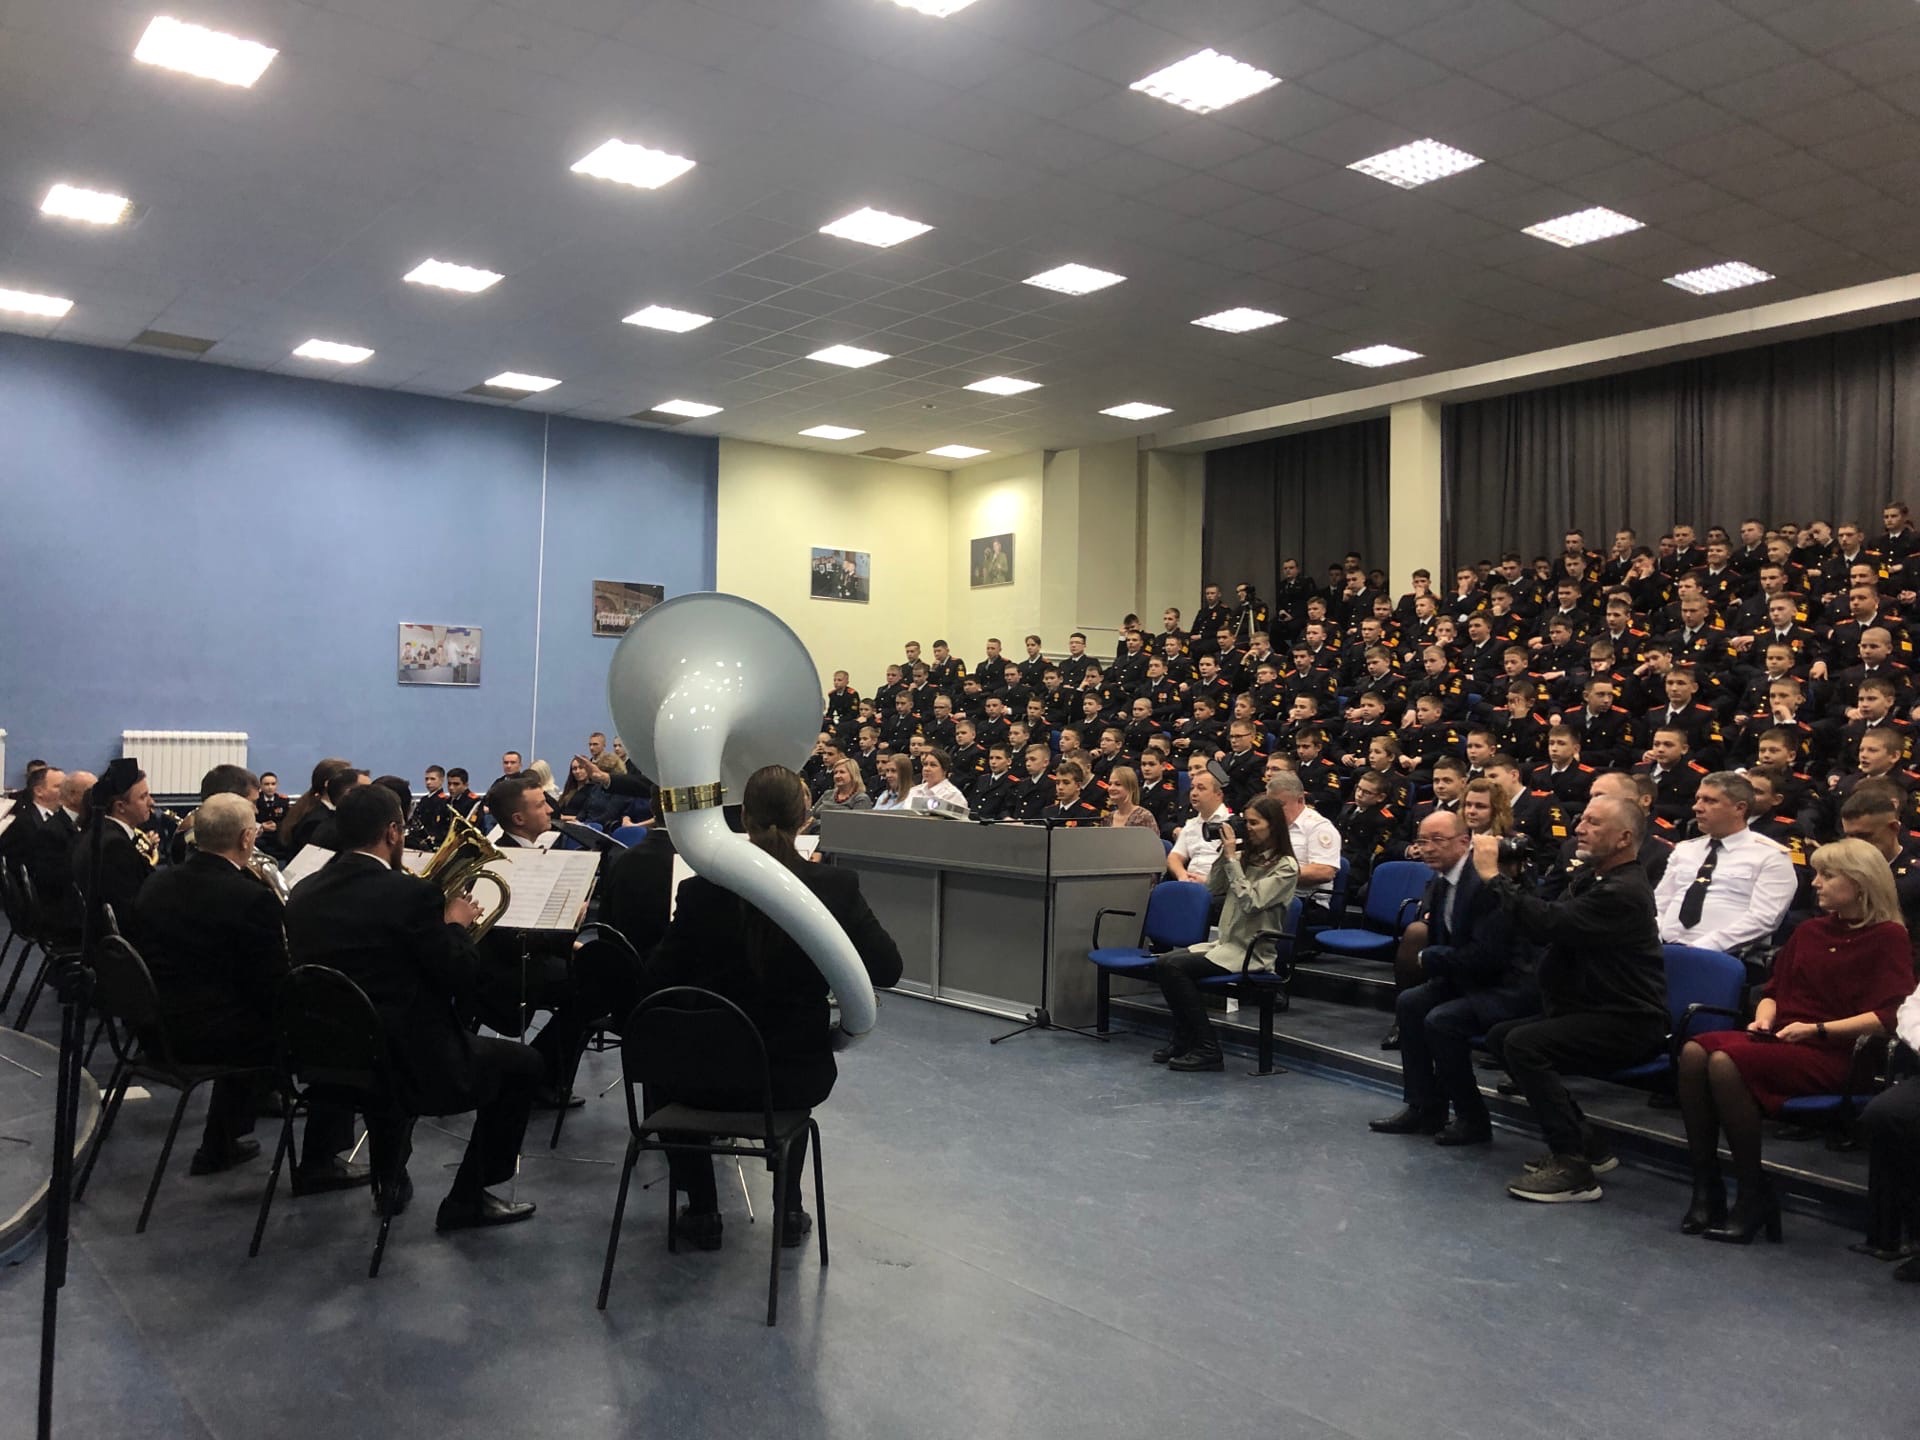 Самарский муниципальный духовой оркестр выступил с новой музыкальной программой